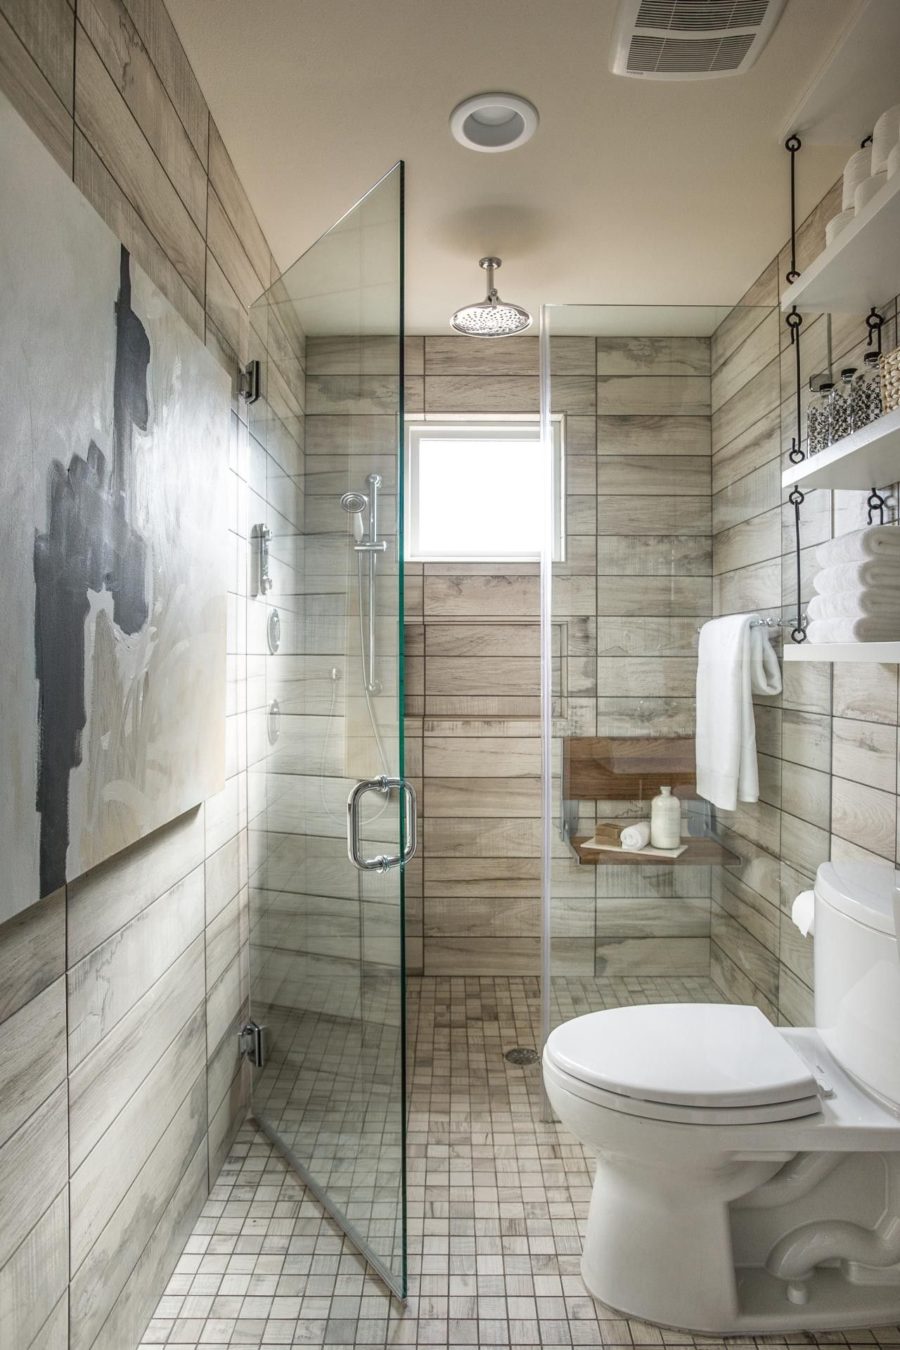 浴室设计案例看完这些实拍照片才知道卫生间用木纹砖这么美